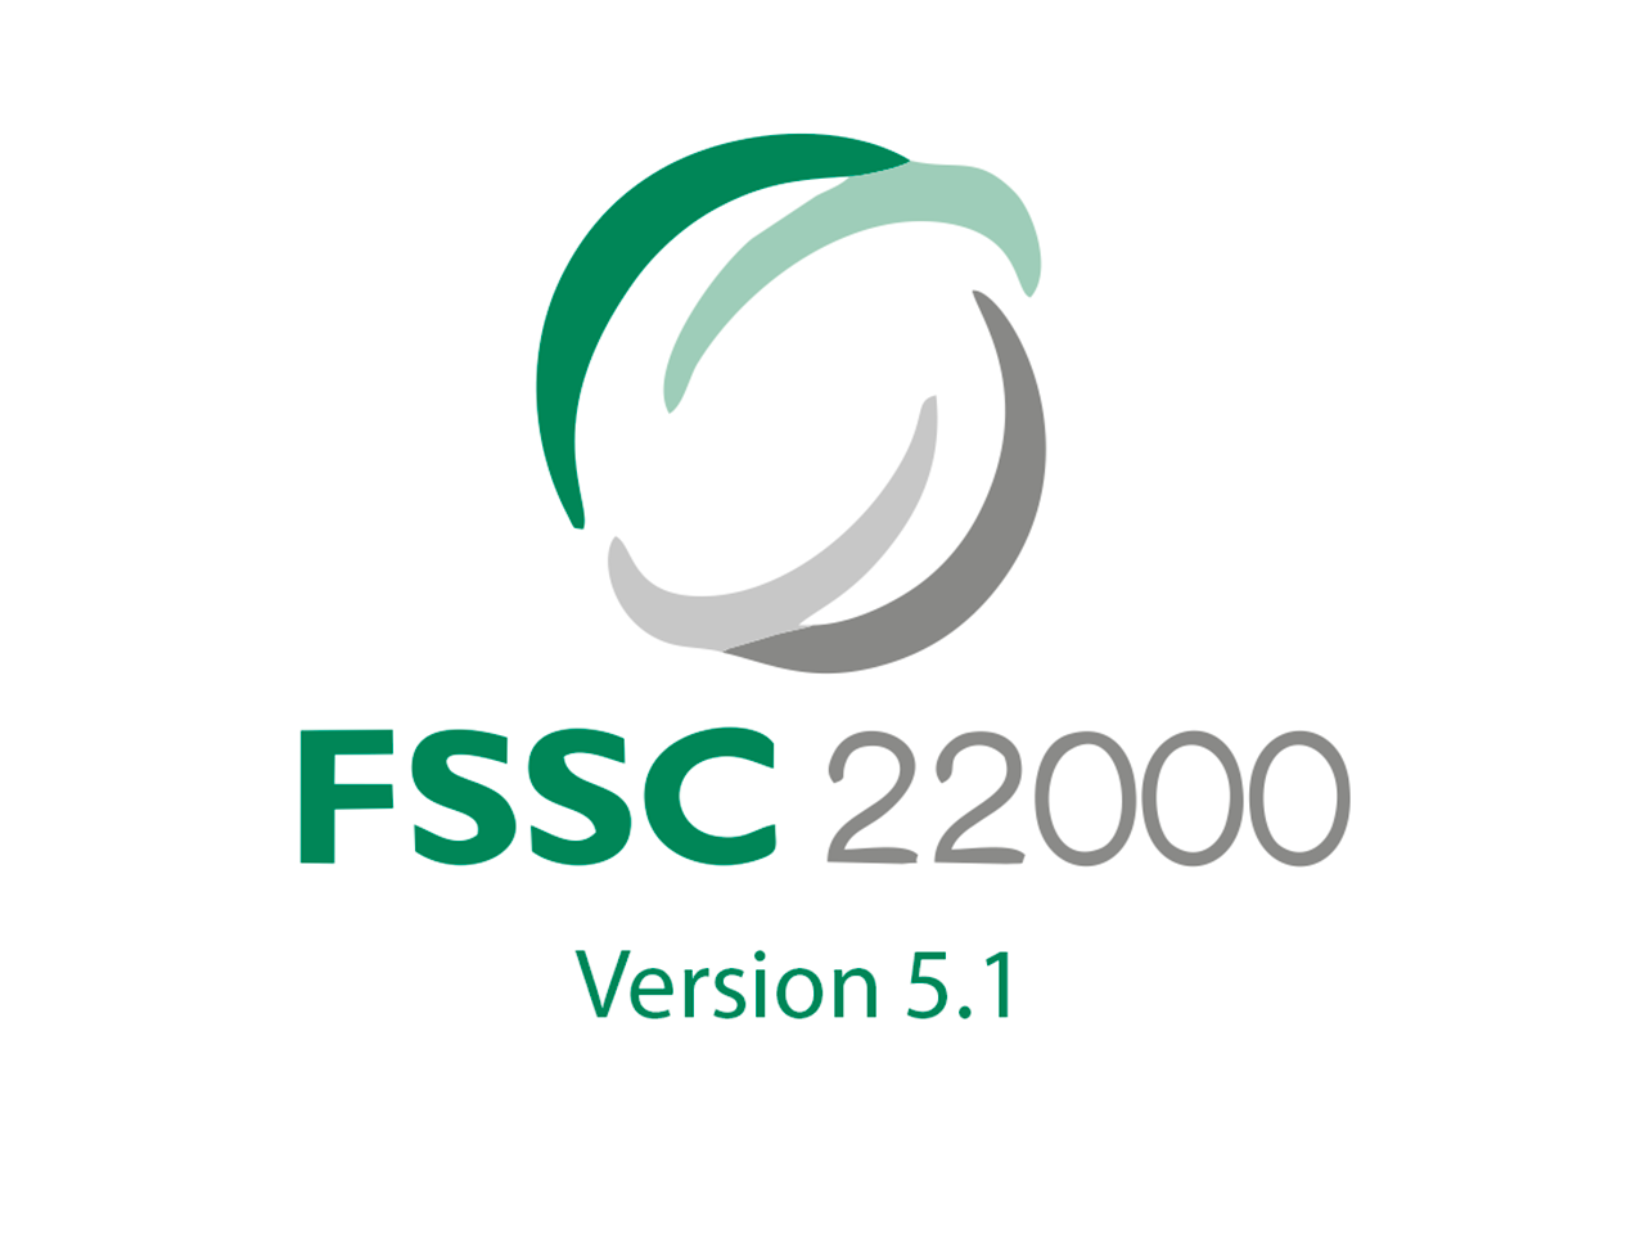 «Молочный комбинат Энгельсский» в числе первых прошёл сертификацию производства на соответствие новой международной системе качества FSSC 22000 в версии v. 5.1